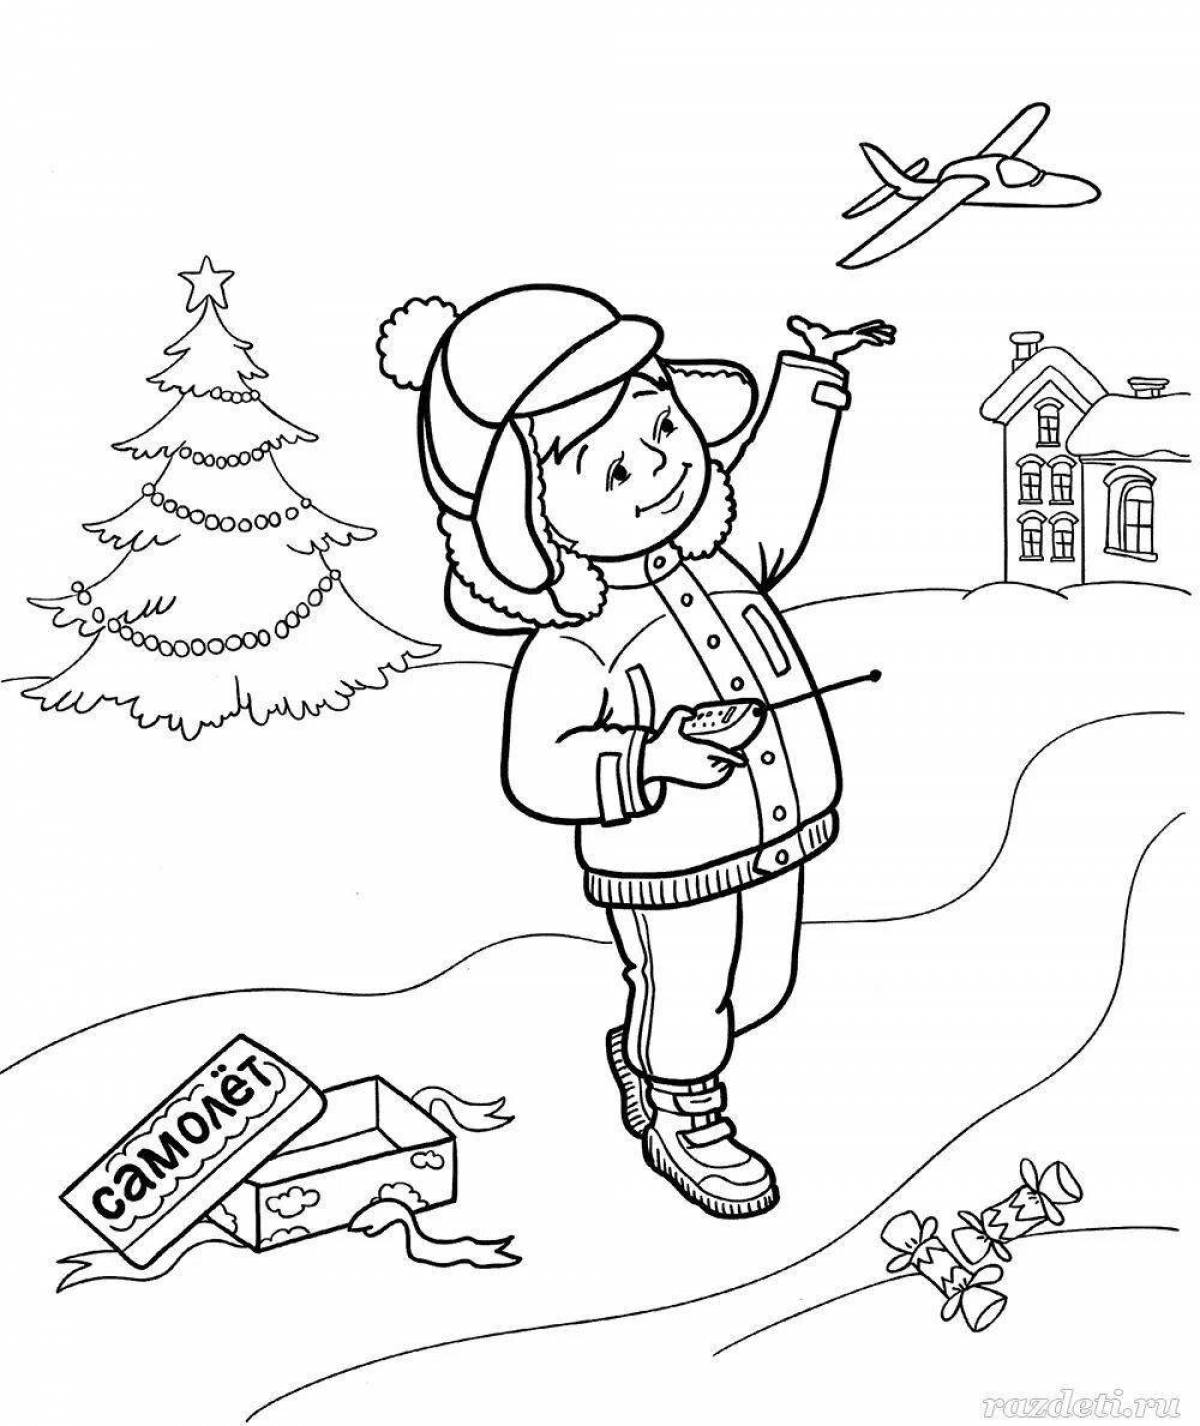 Children's winter hazards #16